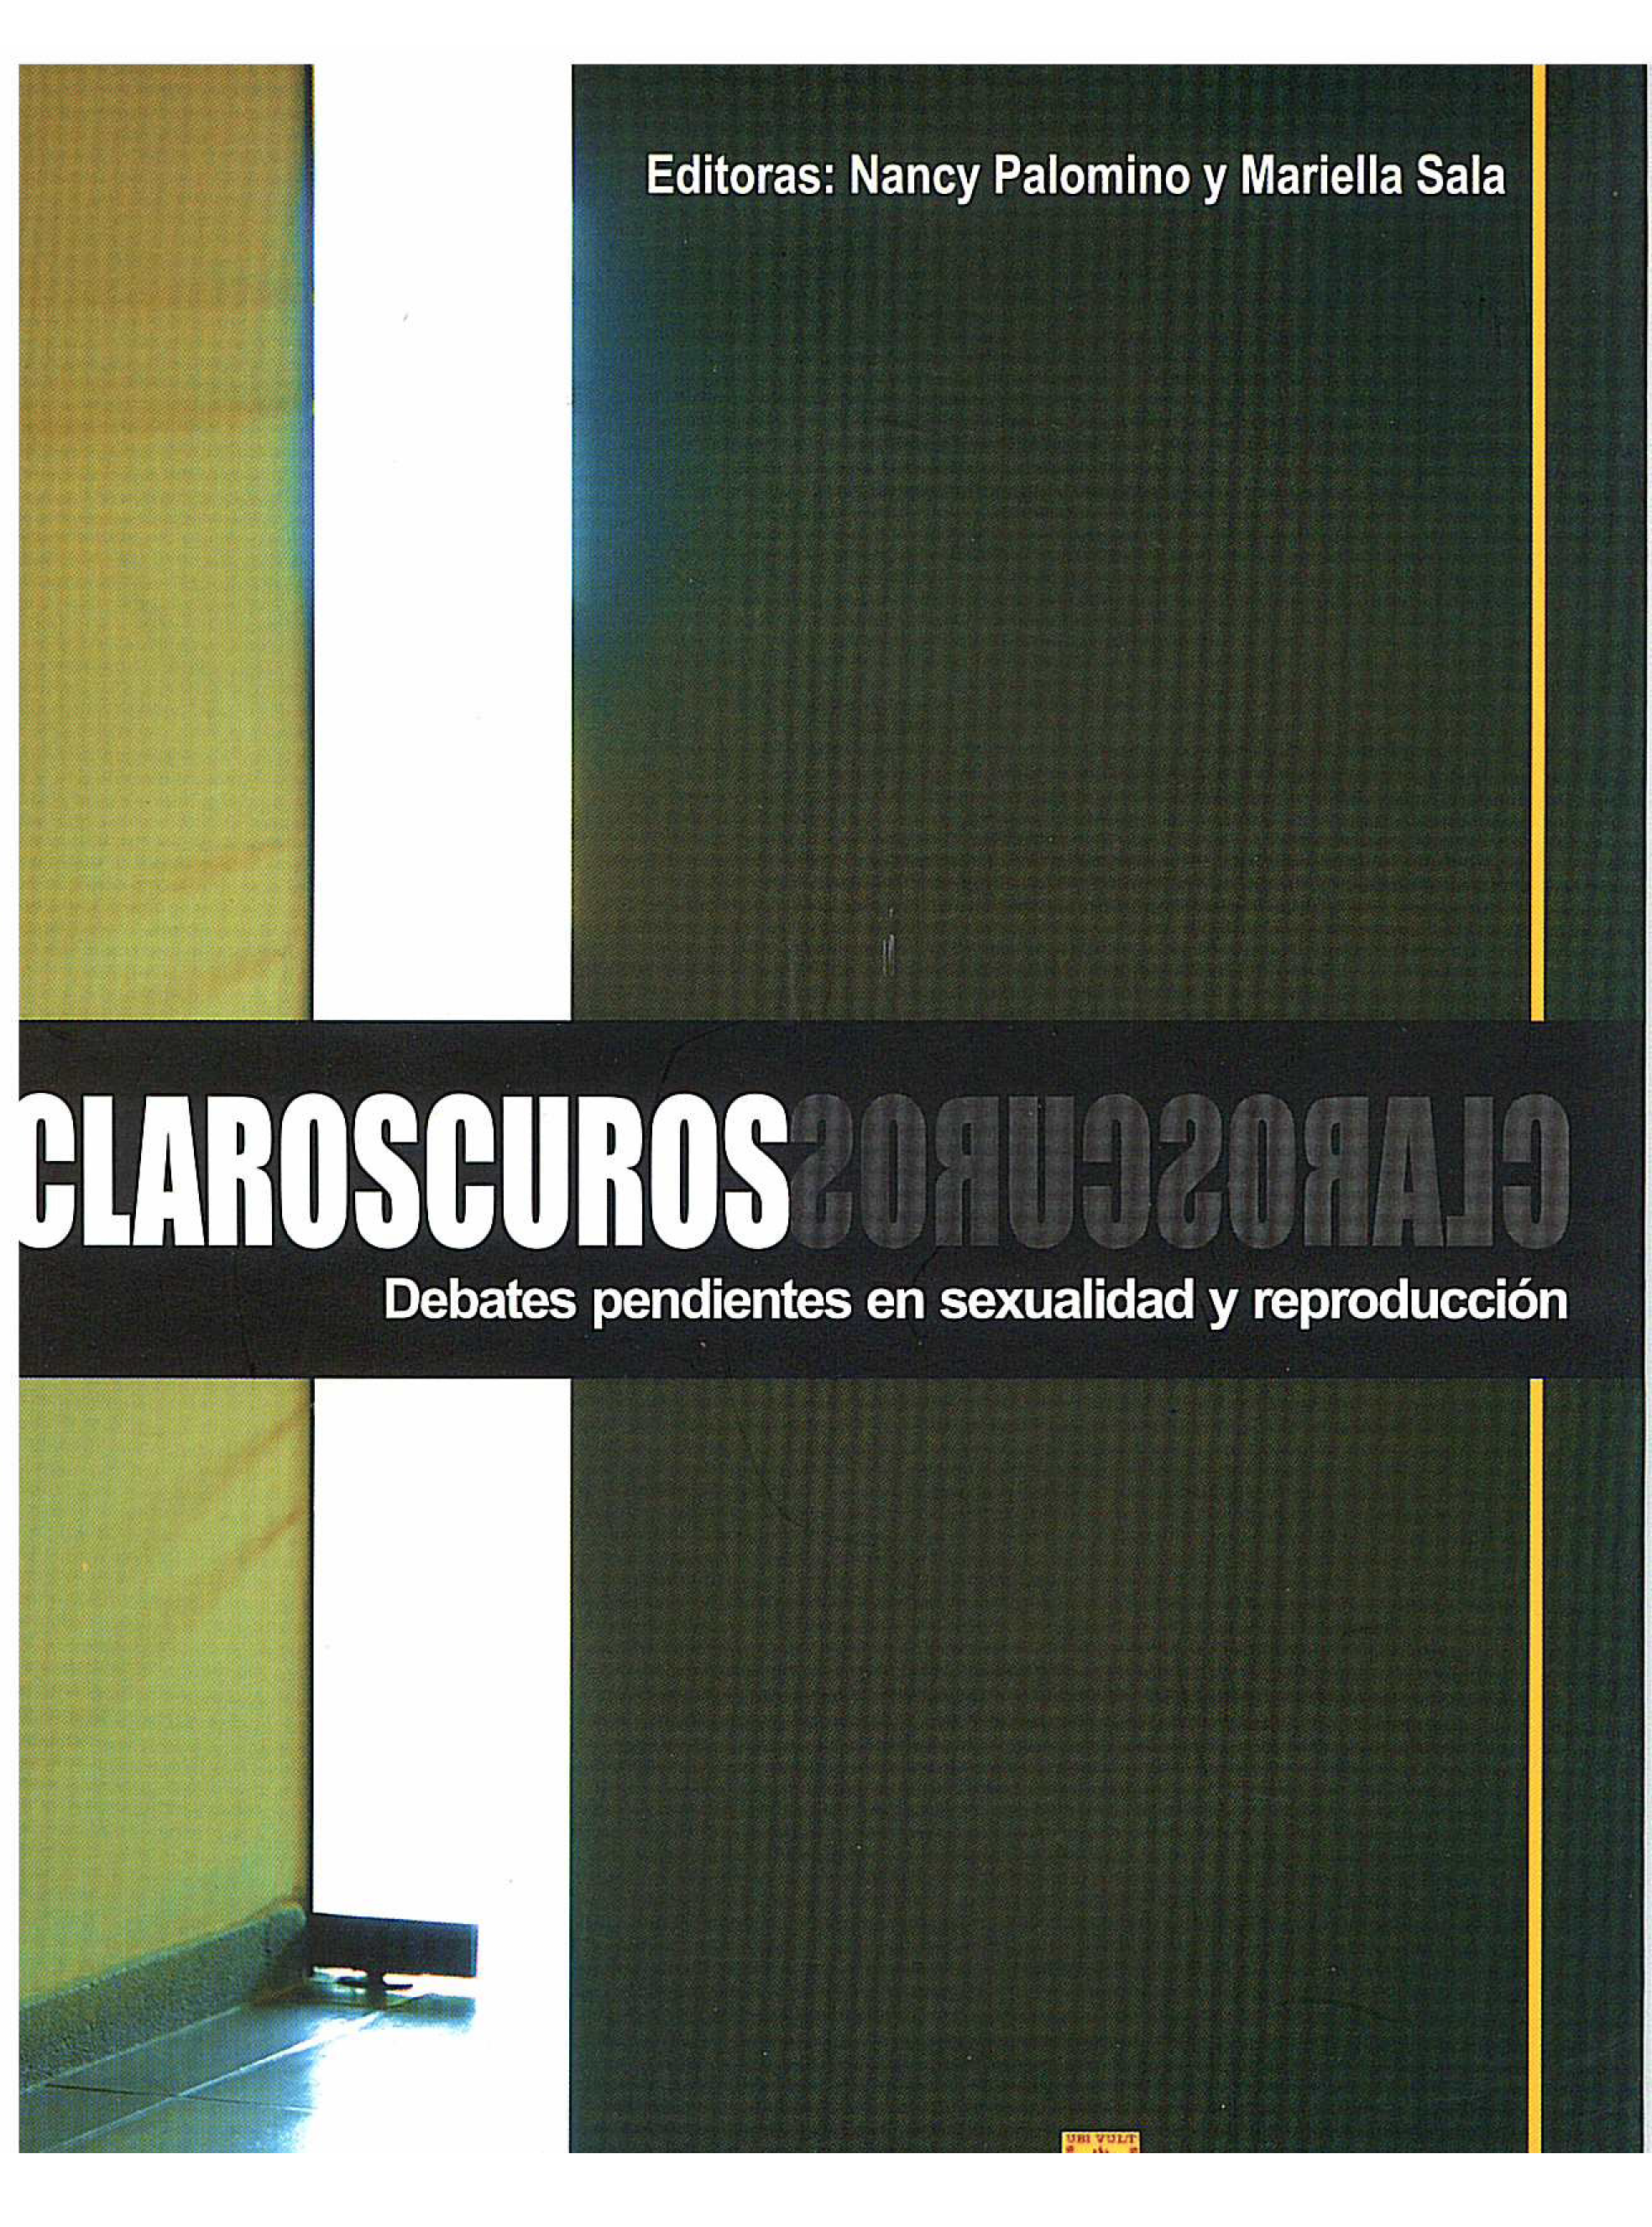 Claroscuros. Debates pendientes en sexualidad y reproducción